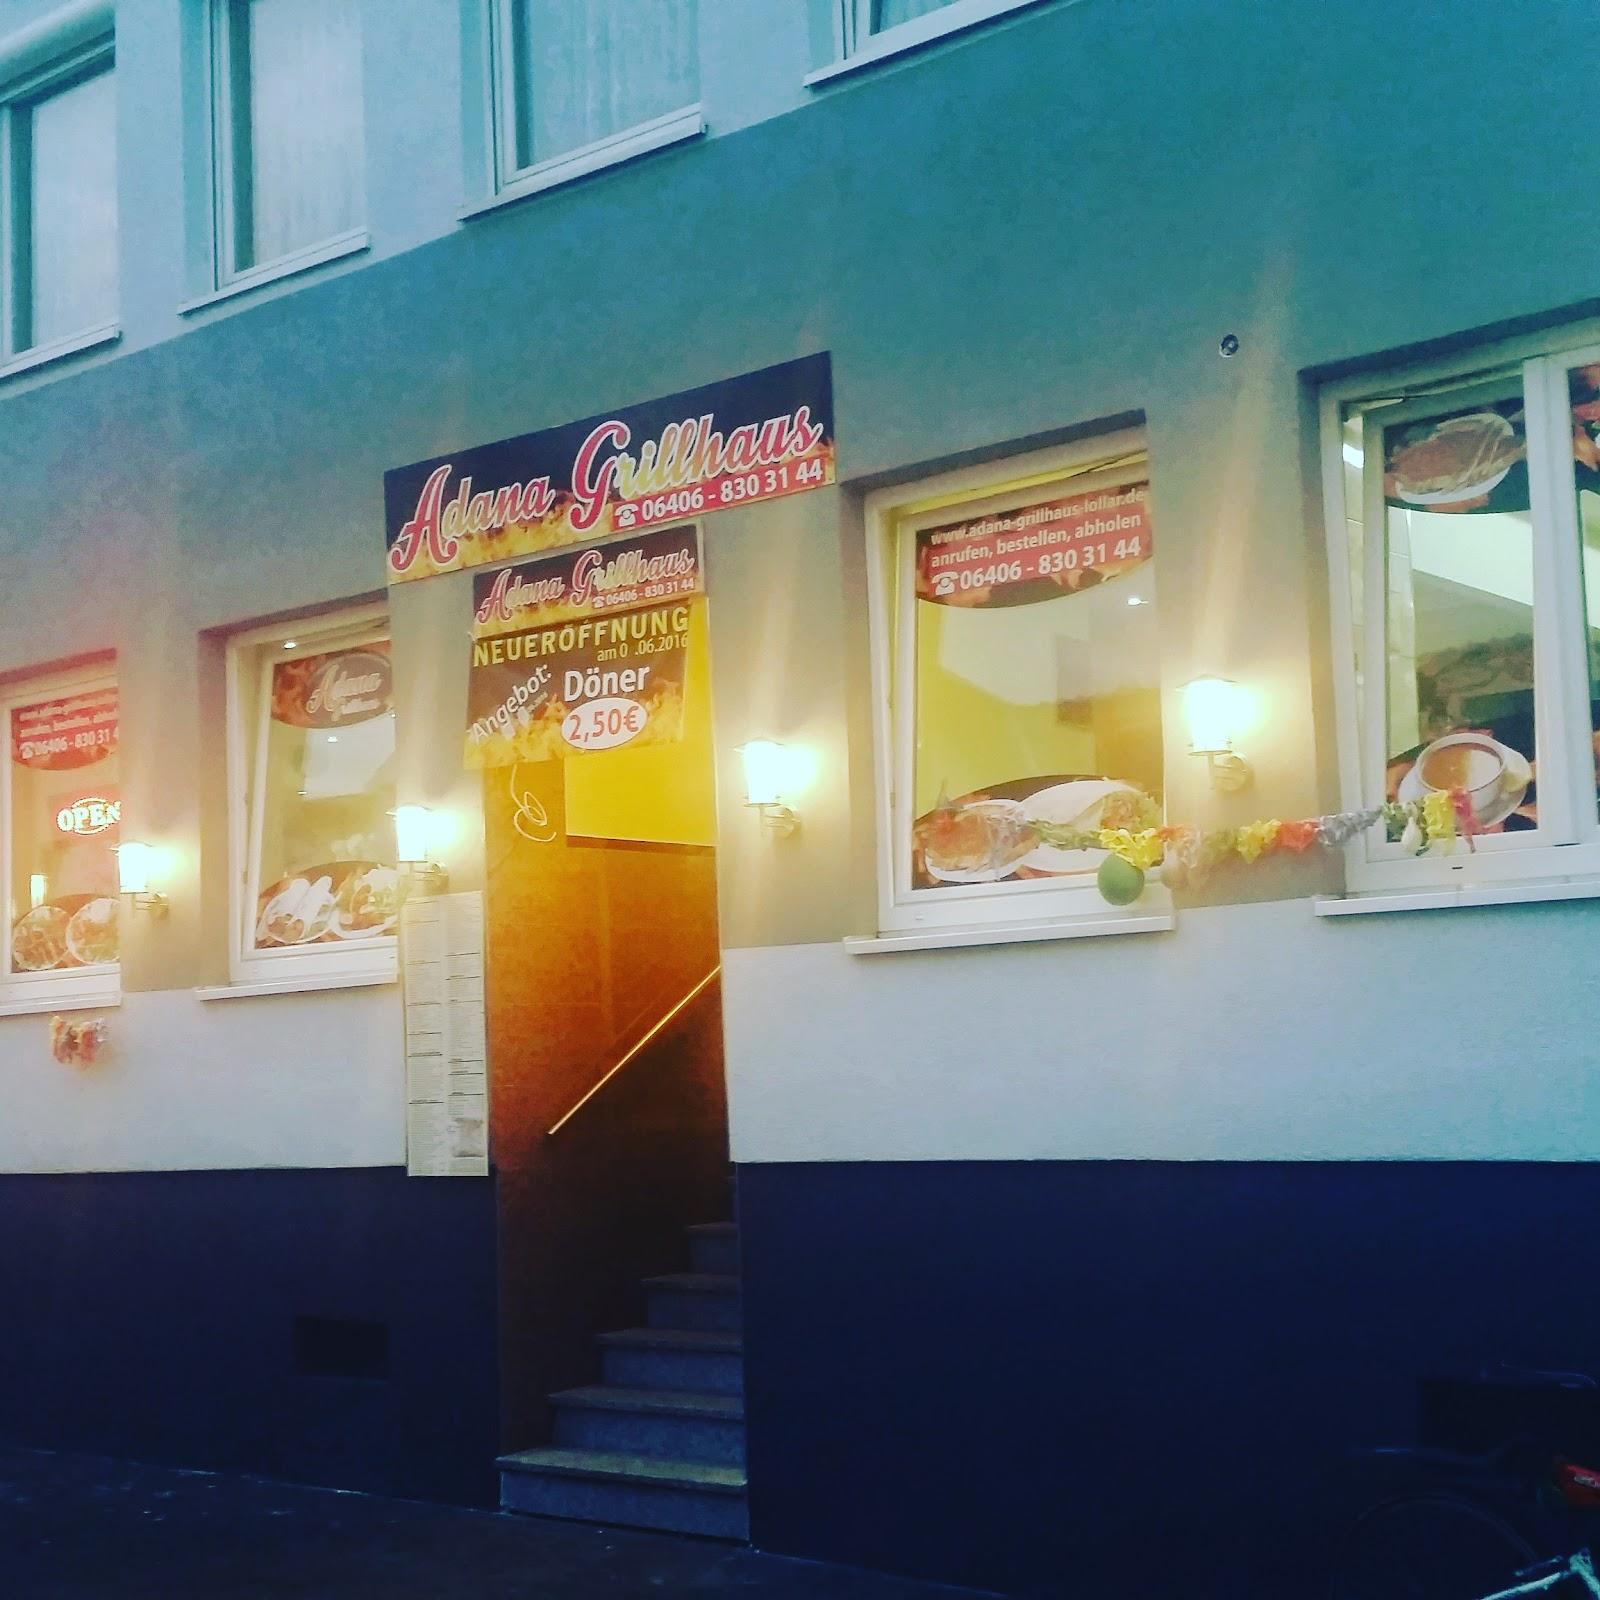 Restaurant "Adana Grillhaus kahraman usta" in  Lollar